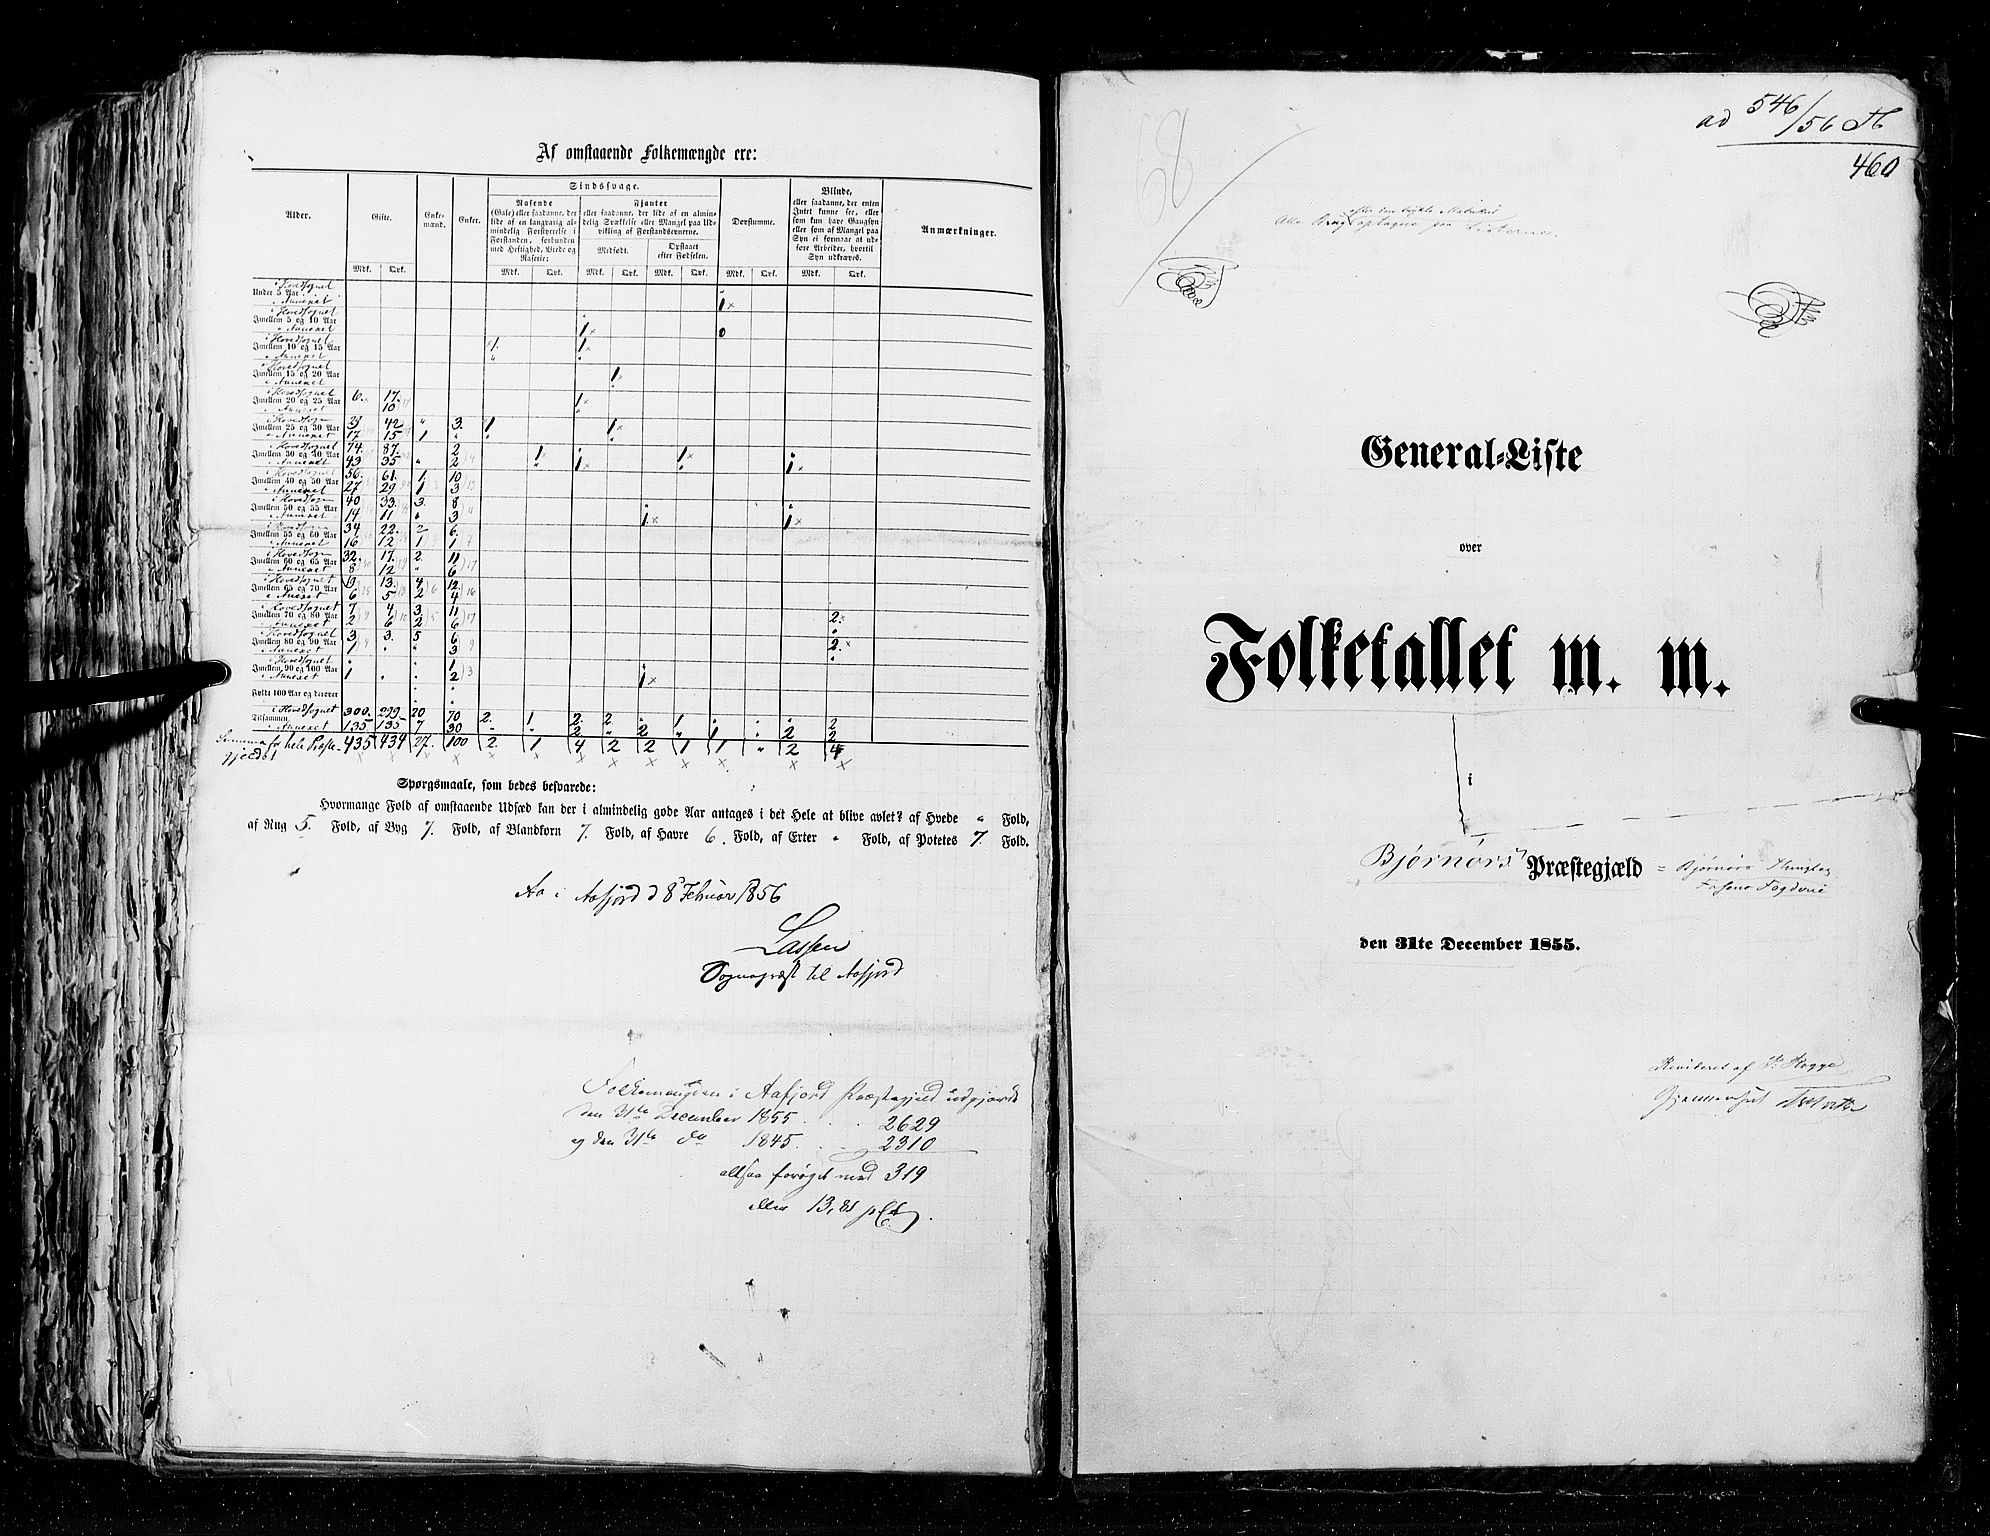 RA, Folketellingen 1855, bind 5: Nordre Bergenhus amt, Romsdal amt og Søndre Trondhjem amt, 1855, s. 460